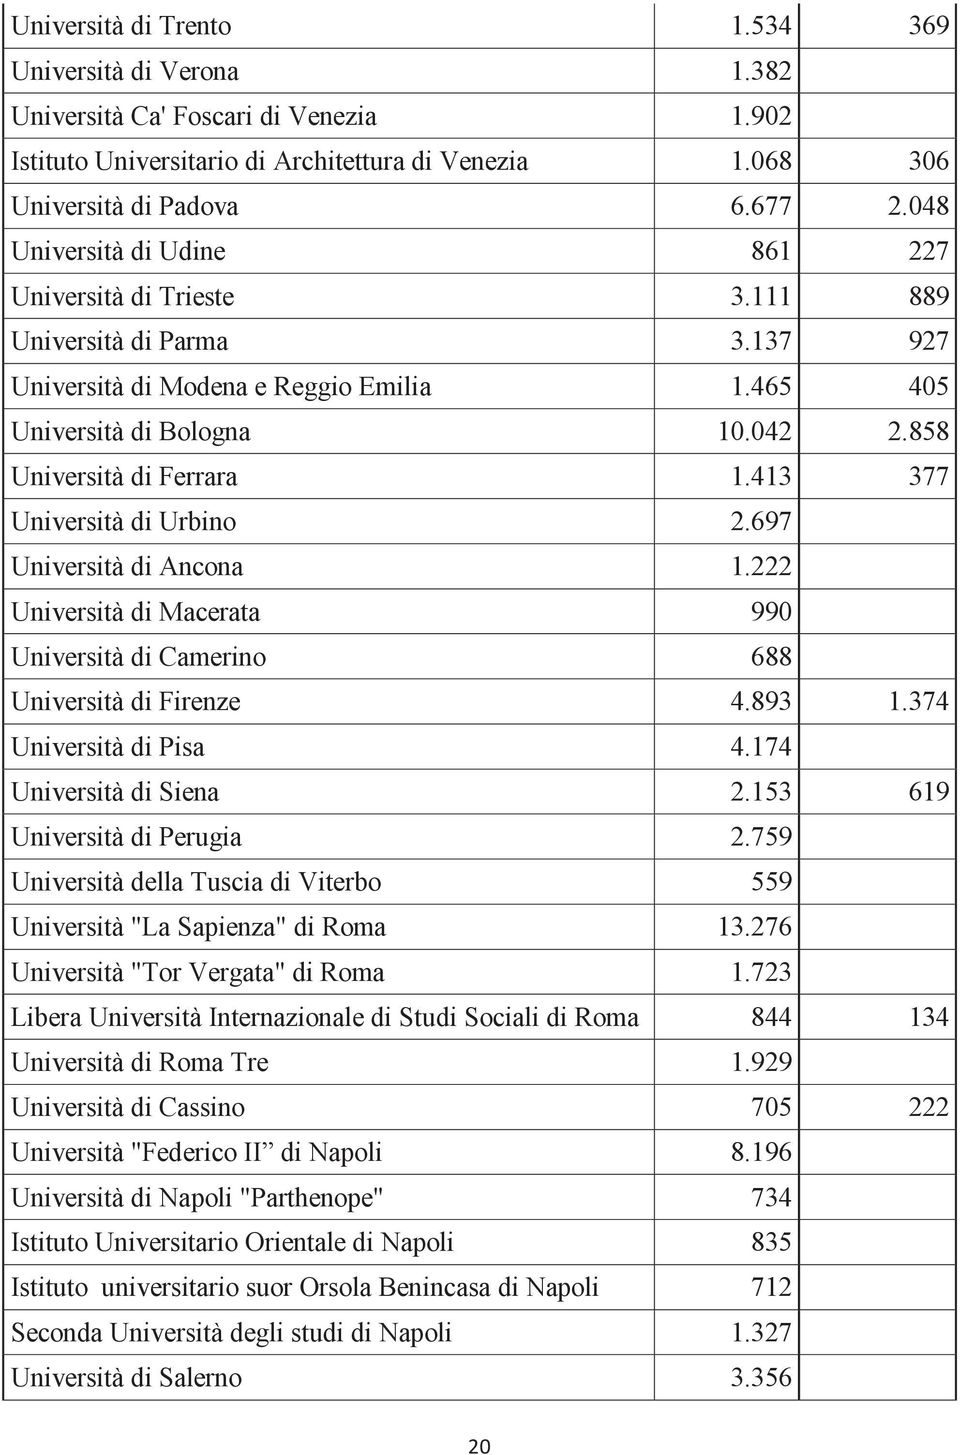 413 377 Università di Urbino 2.697 Università di Ancona 1.222 Università di Macerata 990 Università di Camerino 688 Università di Firenze 4.893 1.374 Università di Pisa 4.174 Università di Siena 2.